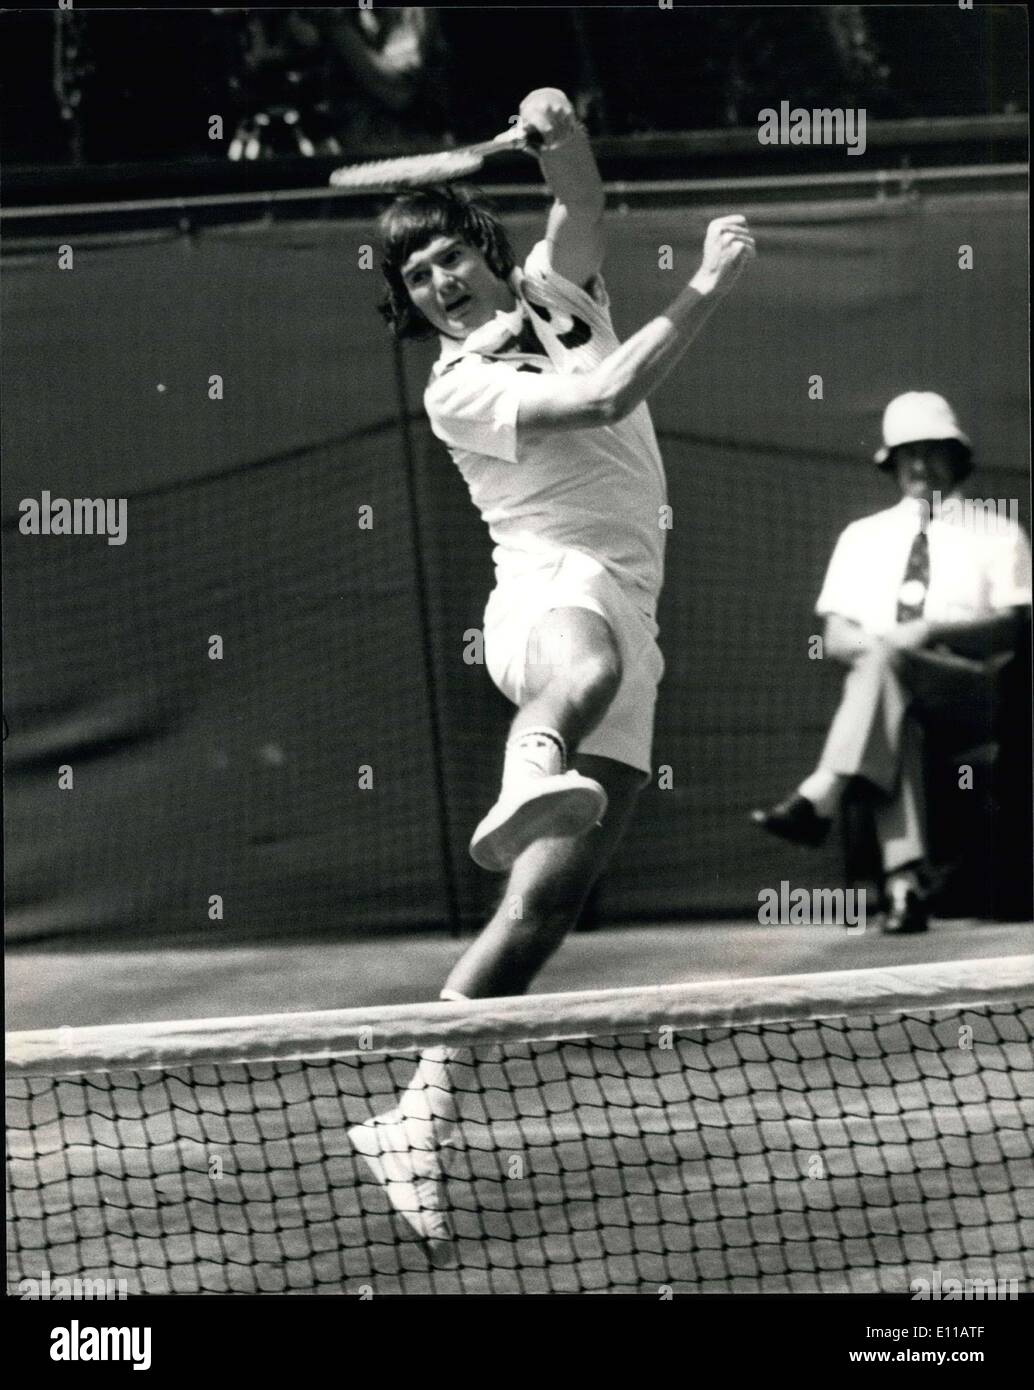 Giugno 29, 1976 - Wimbledon Tennis - Roscoe Tanner bussa fuori Jimmy Connors nei quarti di finale degli uomini singoli: Mostra fotografica di Jimmy Connors (USA) in azione contro Roscoe Tanner (USA) durante la loro partita sul Centre Court oggi. Tanner ha vinto il gioco 6-4, 6-2, 6-6. Foto Stock